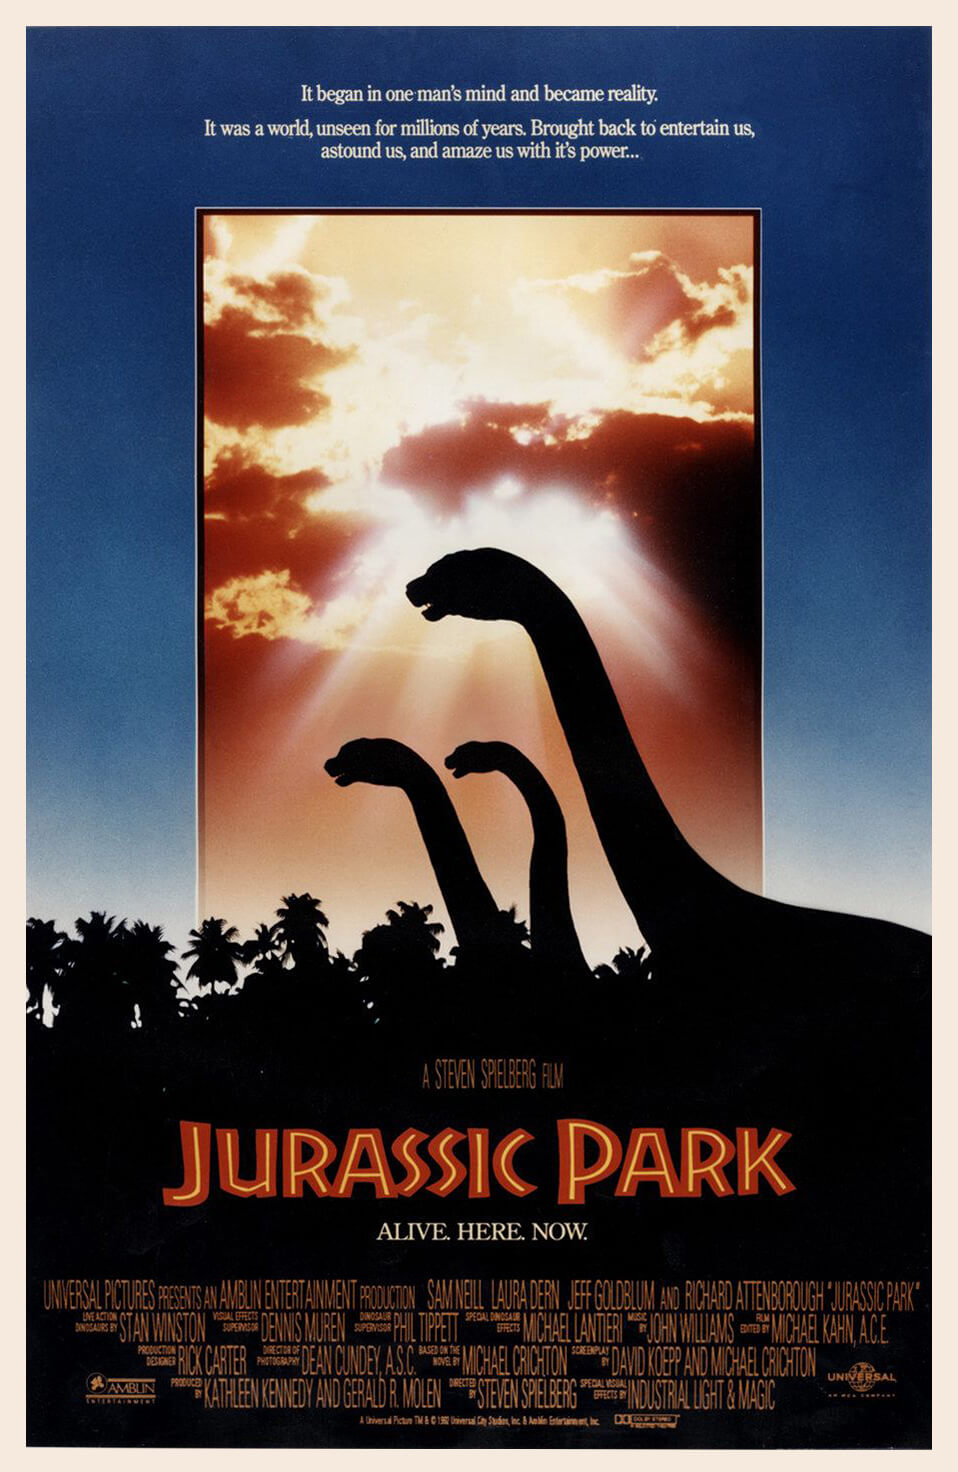 John Alvin Jurassic Park poster 2